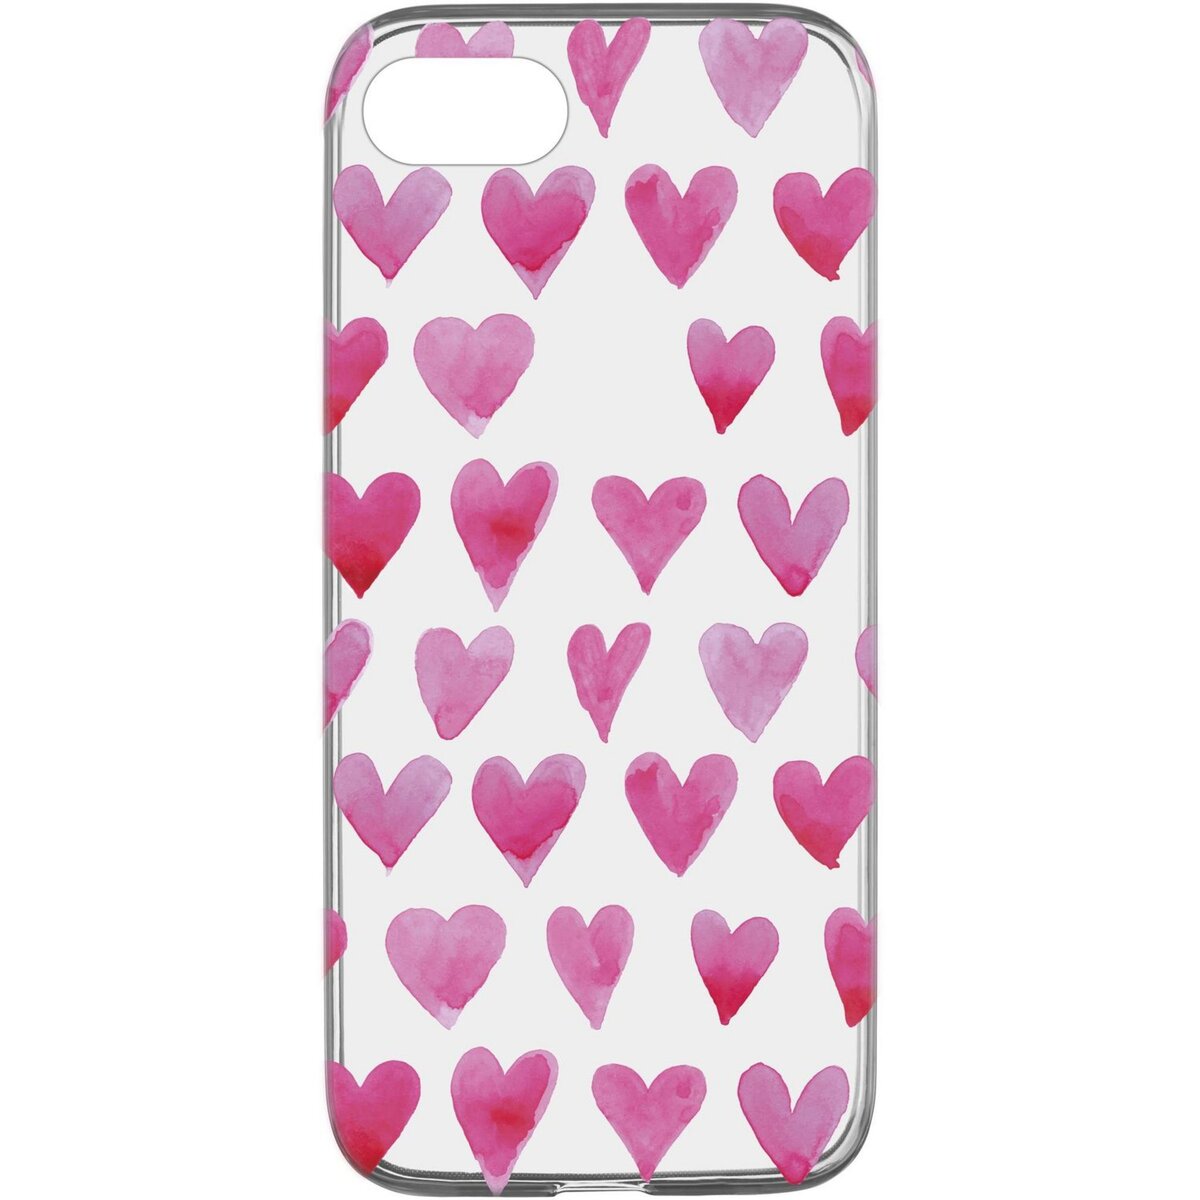 CELLULARLINE Coque de protection pour iPhone 6/7/8 Transparent et rose Cœur